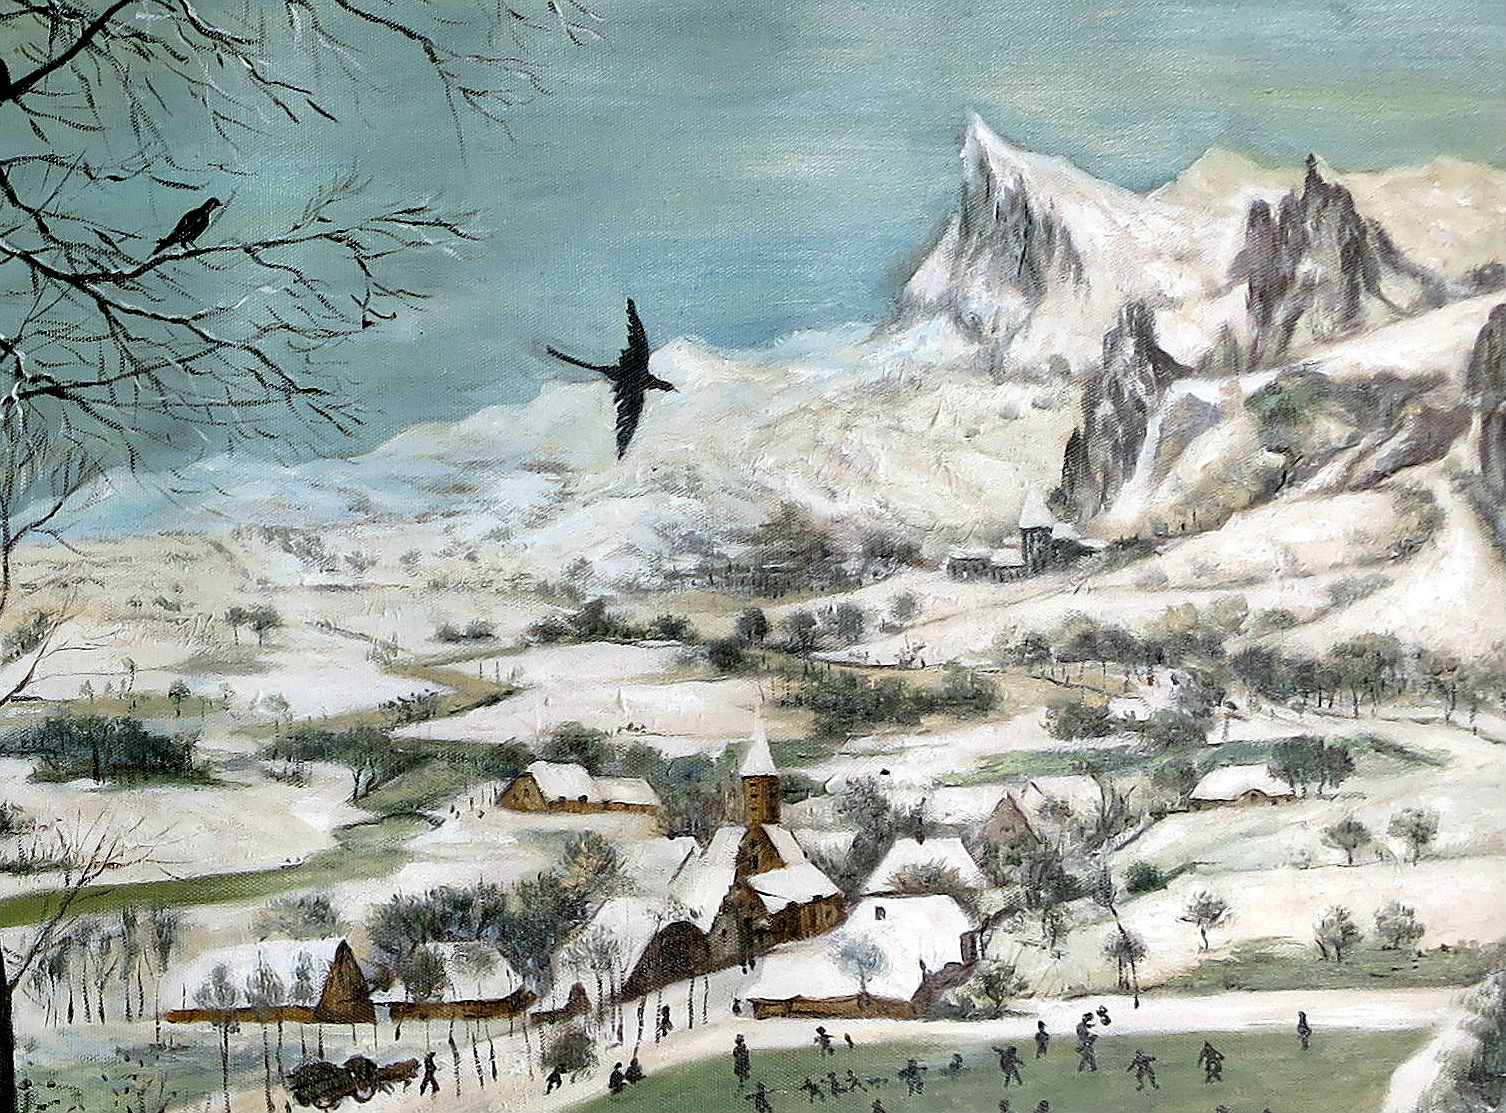 Rechts sind die Berge zu sehen (Ausschnitt der Reproduktion: Pieter Bruegel, Jäger im Schnee)